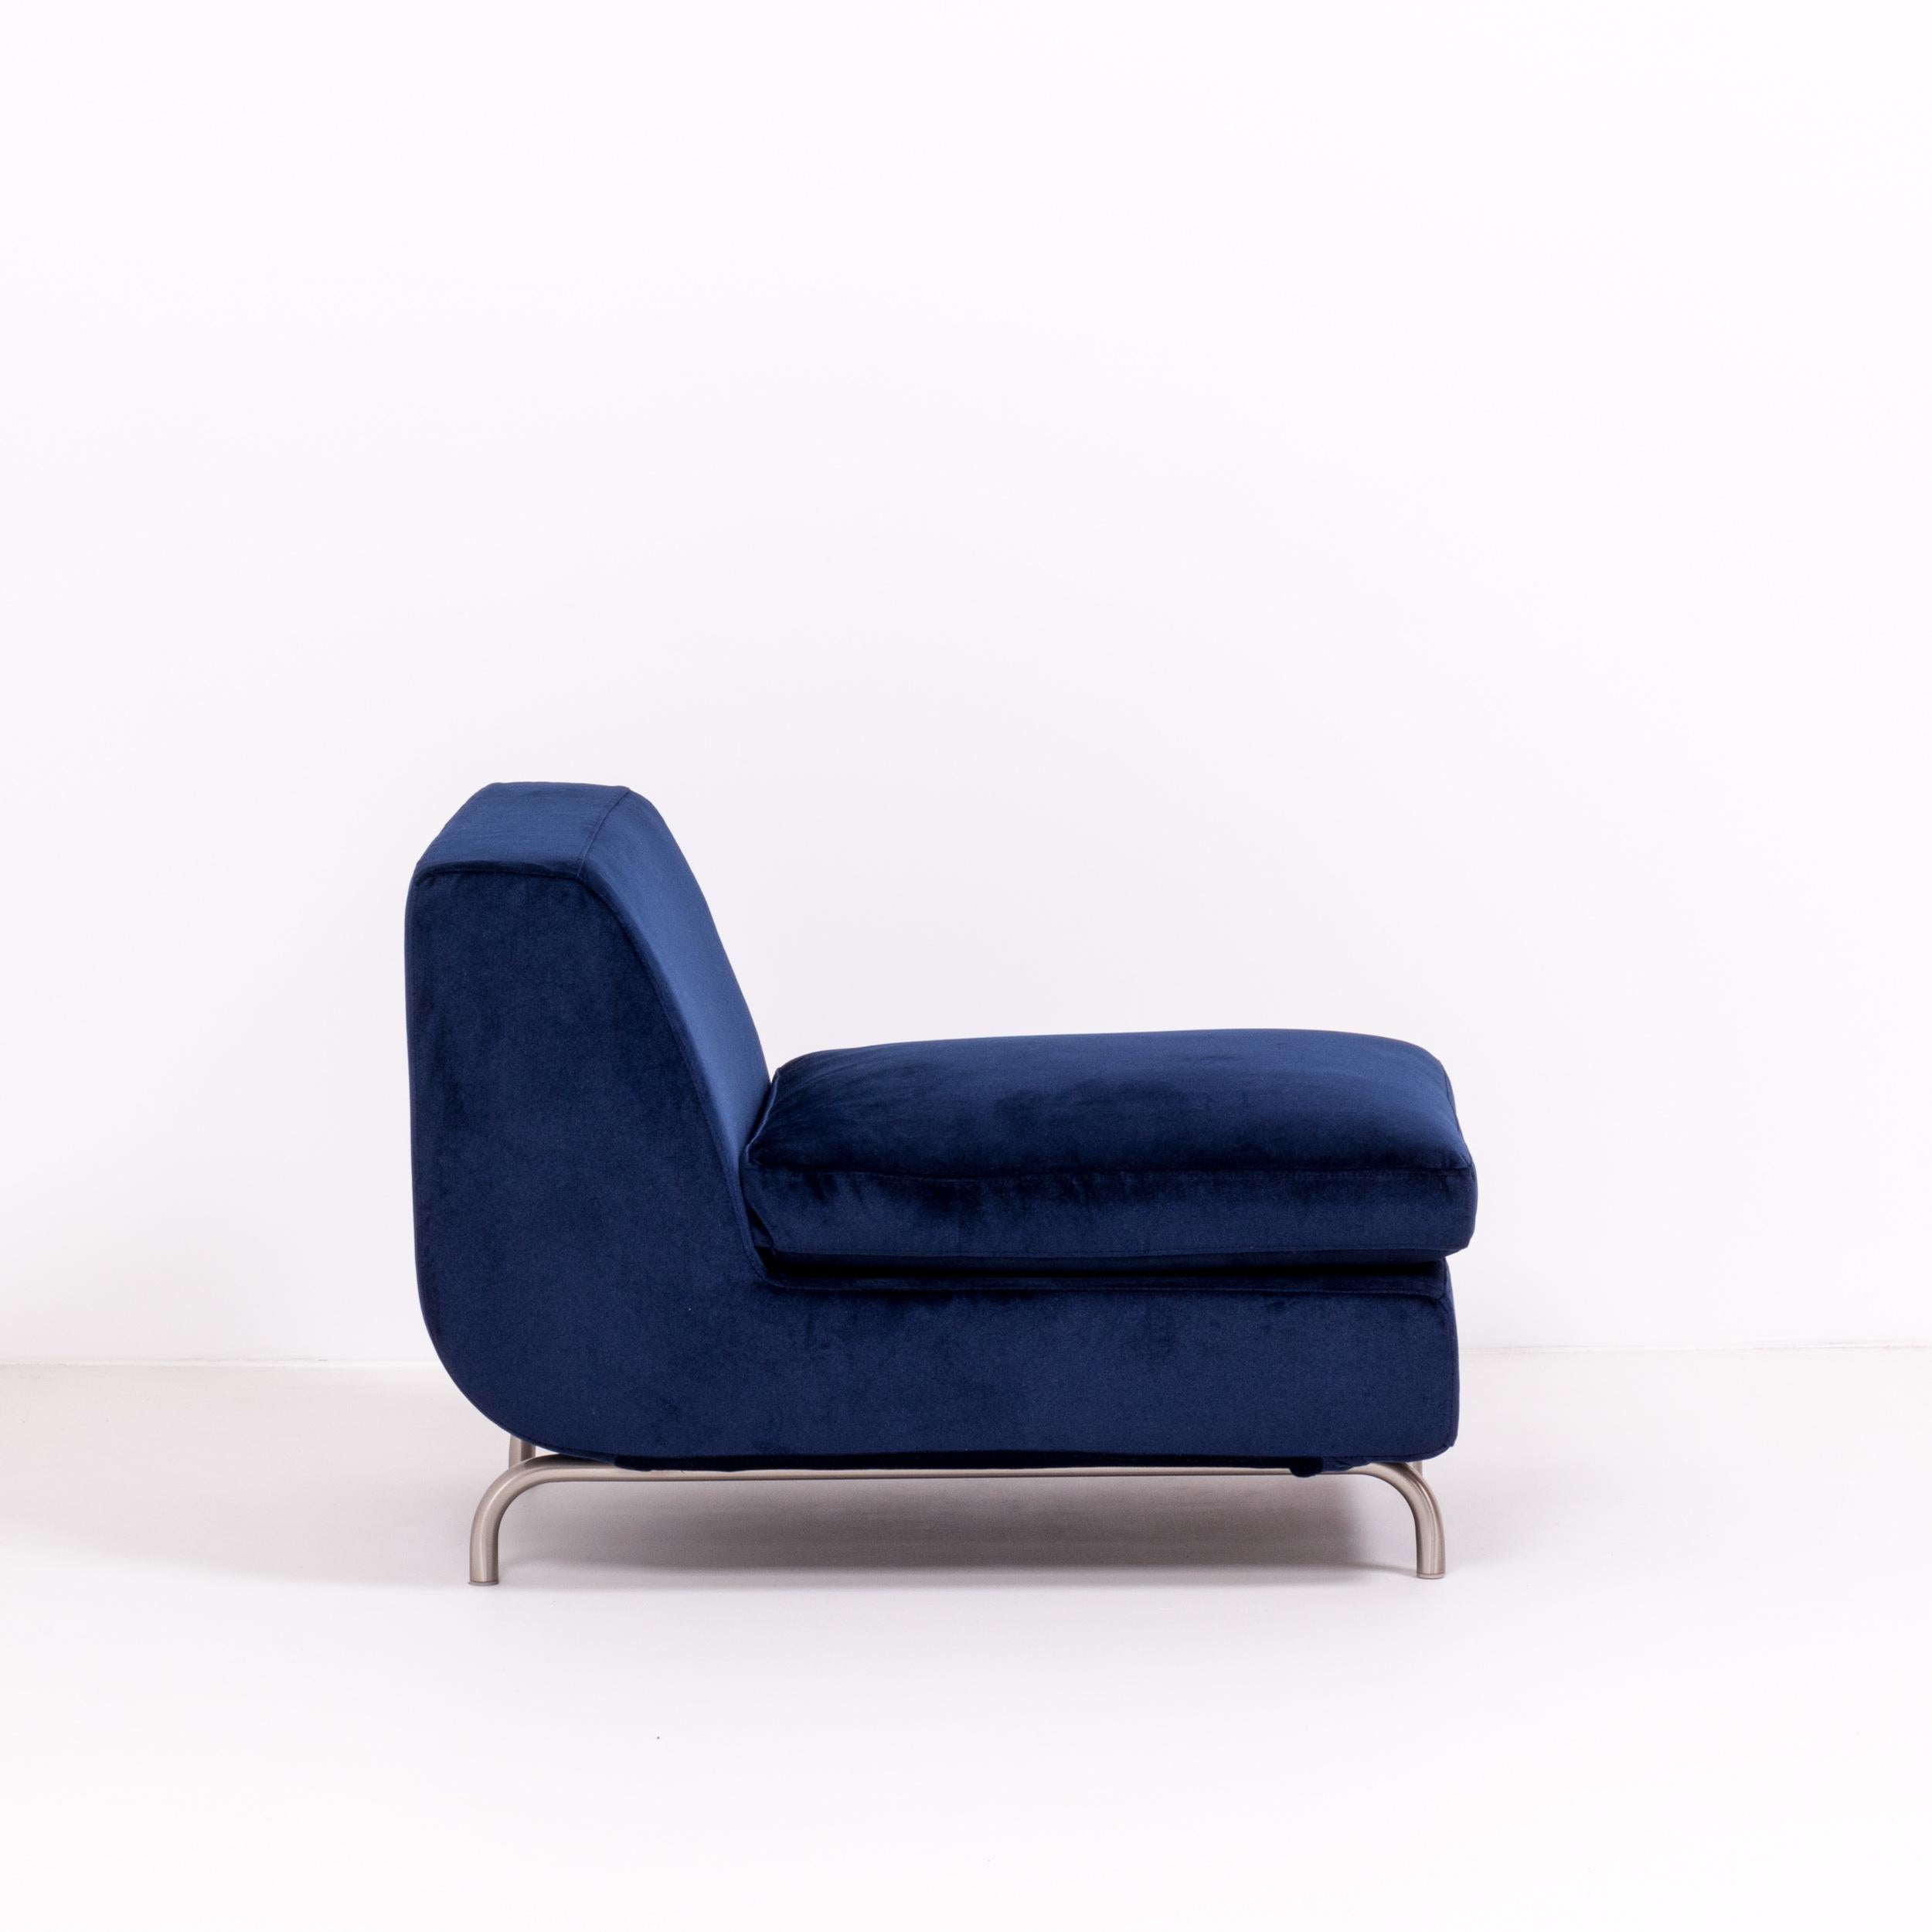 Minotti by Rodolfo Dordoni Dubuffet Navy Blue Lounge Chairs, Set of 2 5